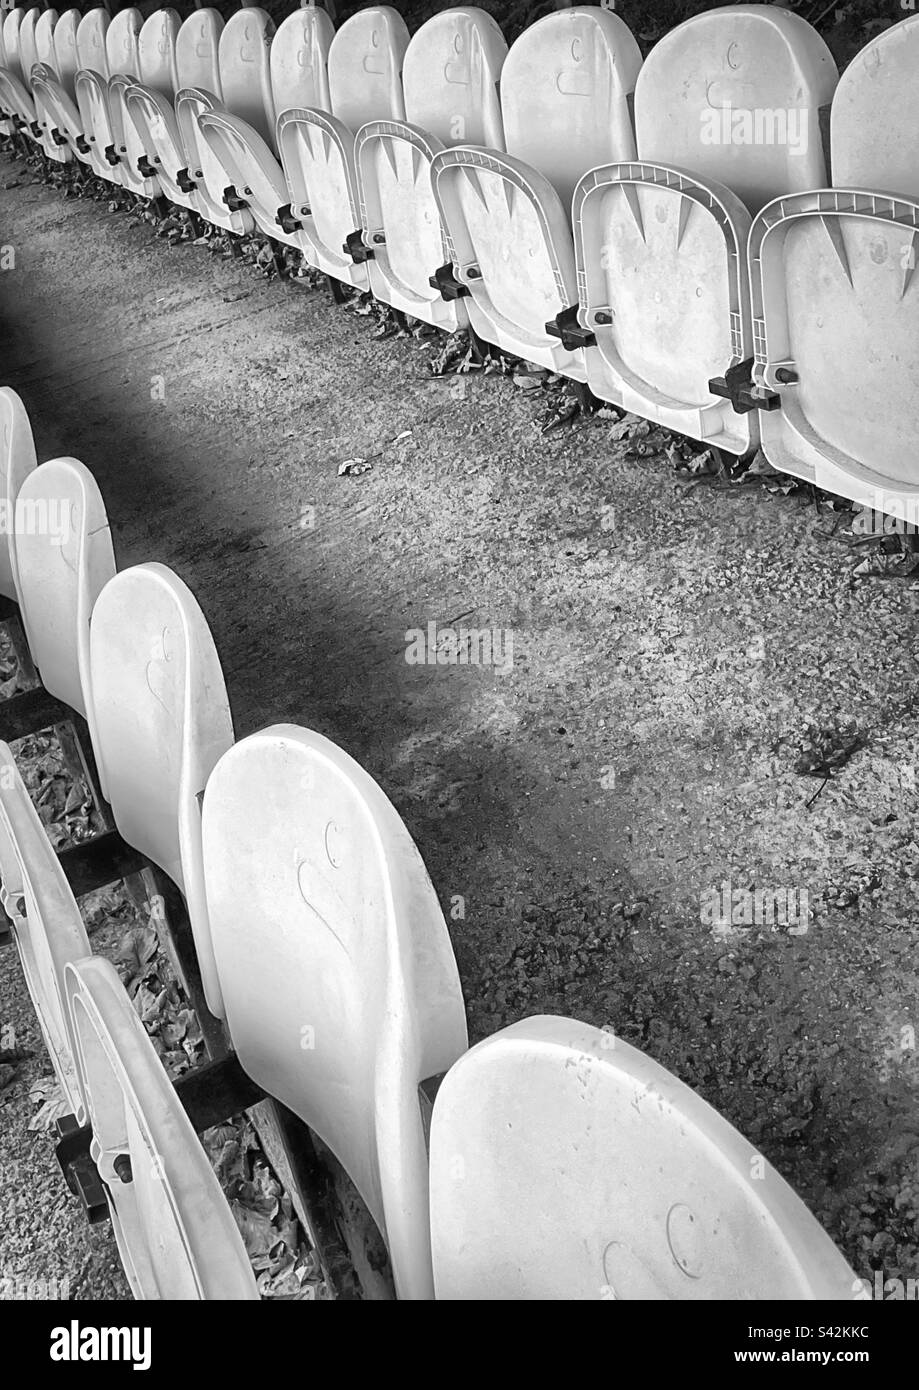 Le foglie autunnali giacciono a terra sotto i sedili in plastica bianca di un campo da calcio semi-professionale. (Bianco e nero) Foto Stock